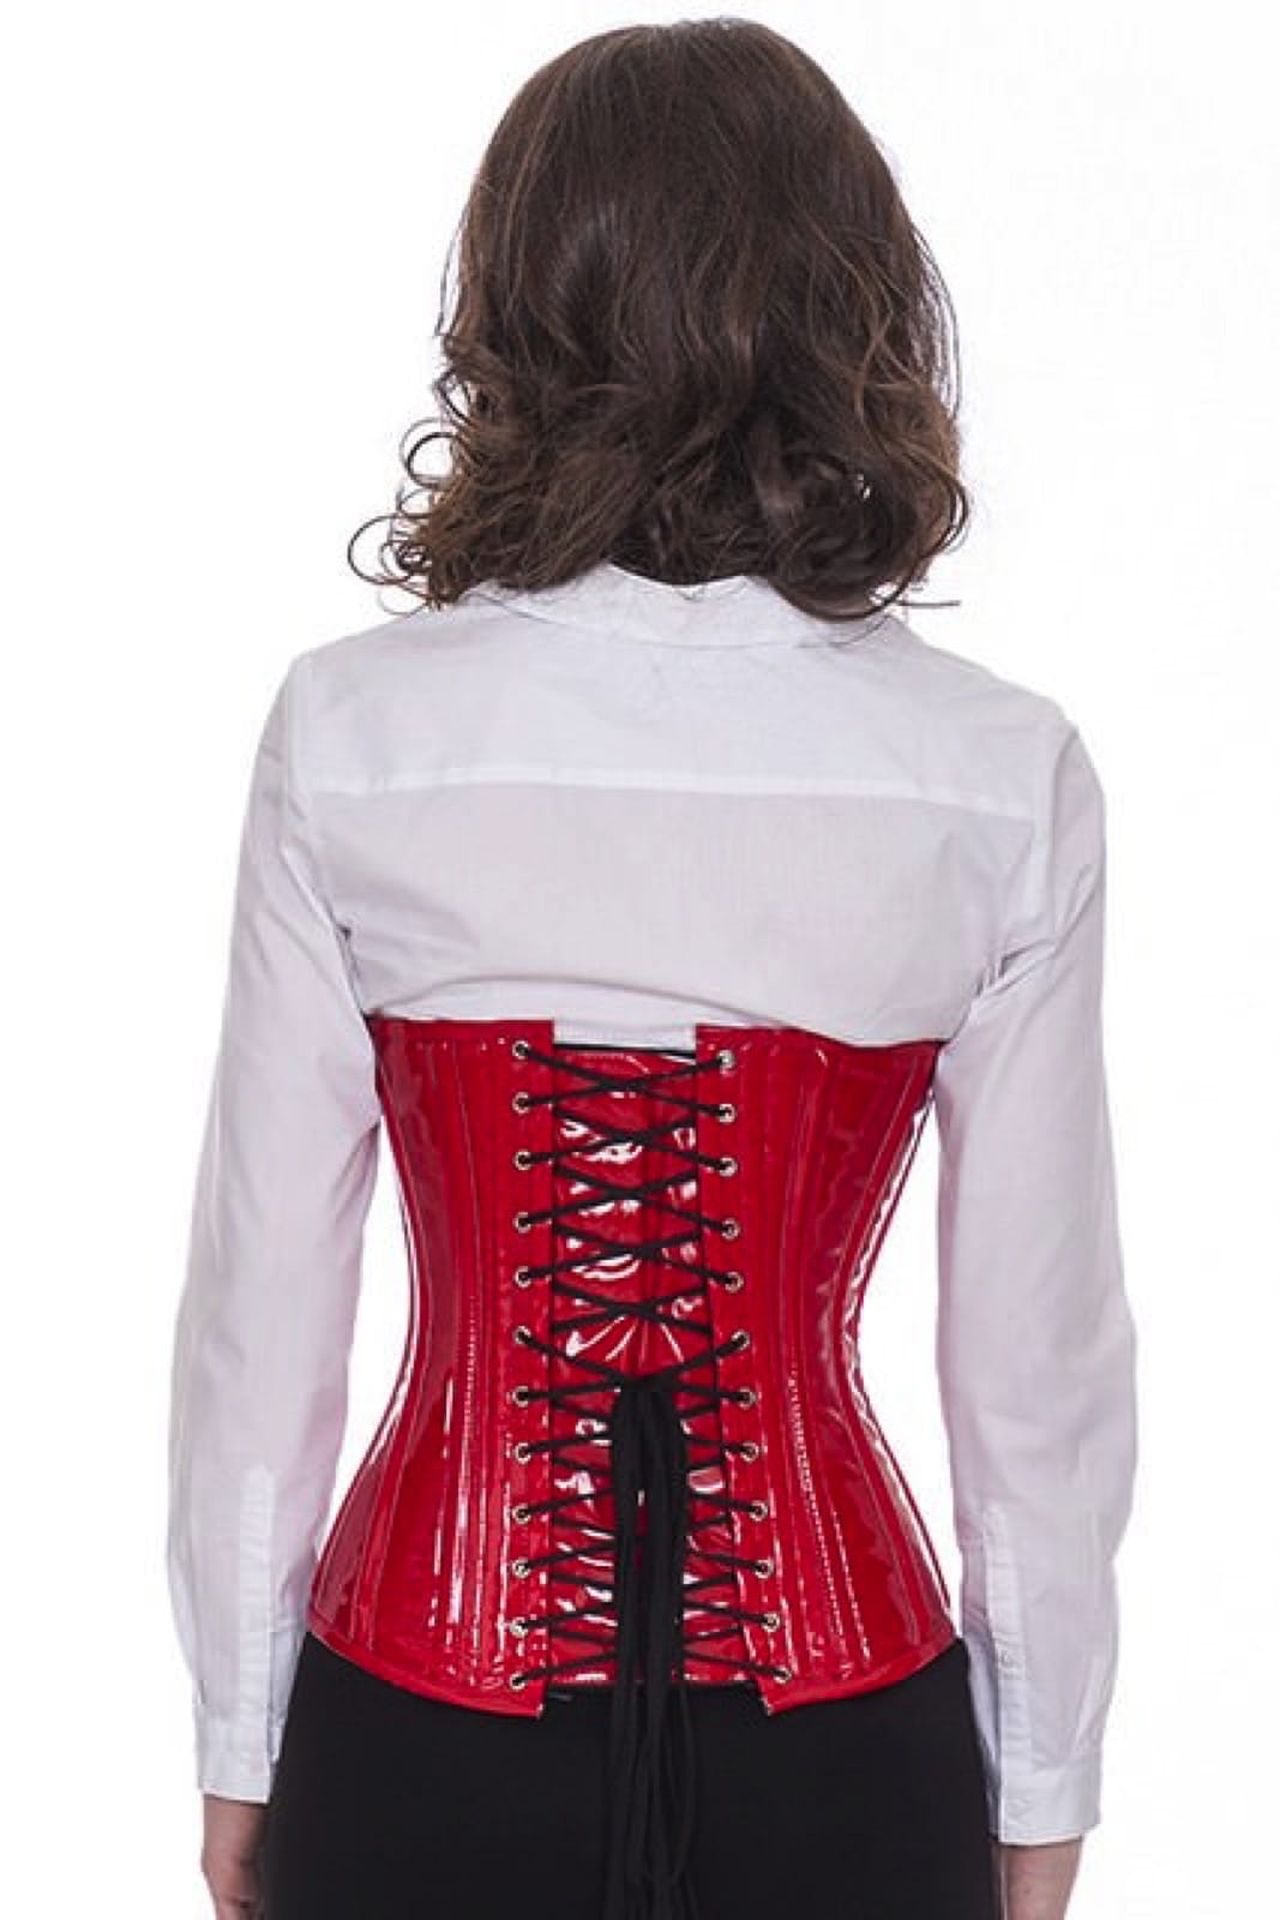 Lak corset rood onderborst met gespen Korset pc71